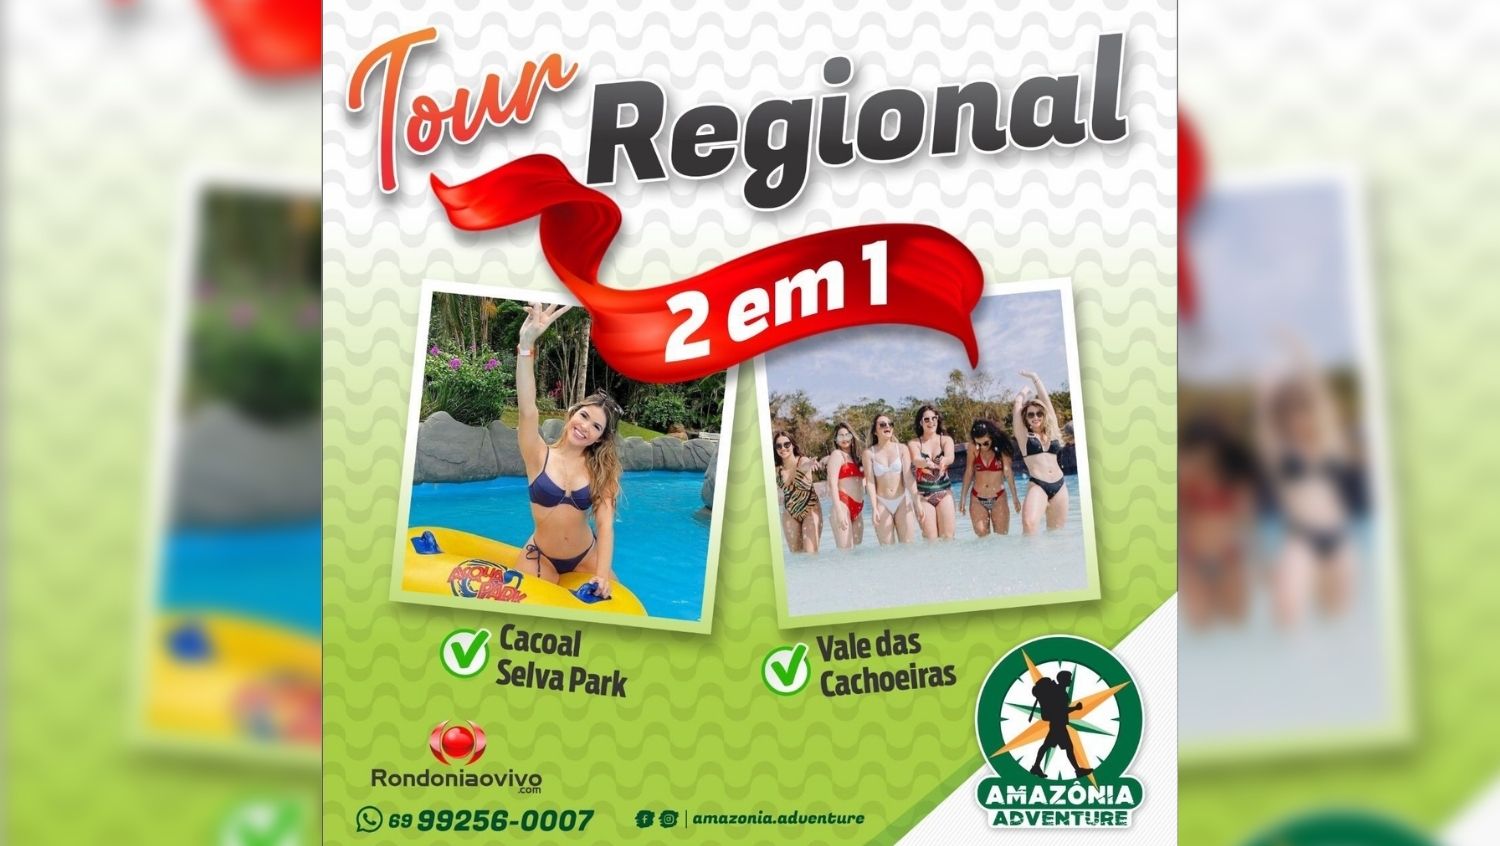 TOUR 2 EM 1: Selva Park e Vale das Cachoeiras com a Amazônia Adventure